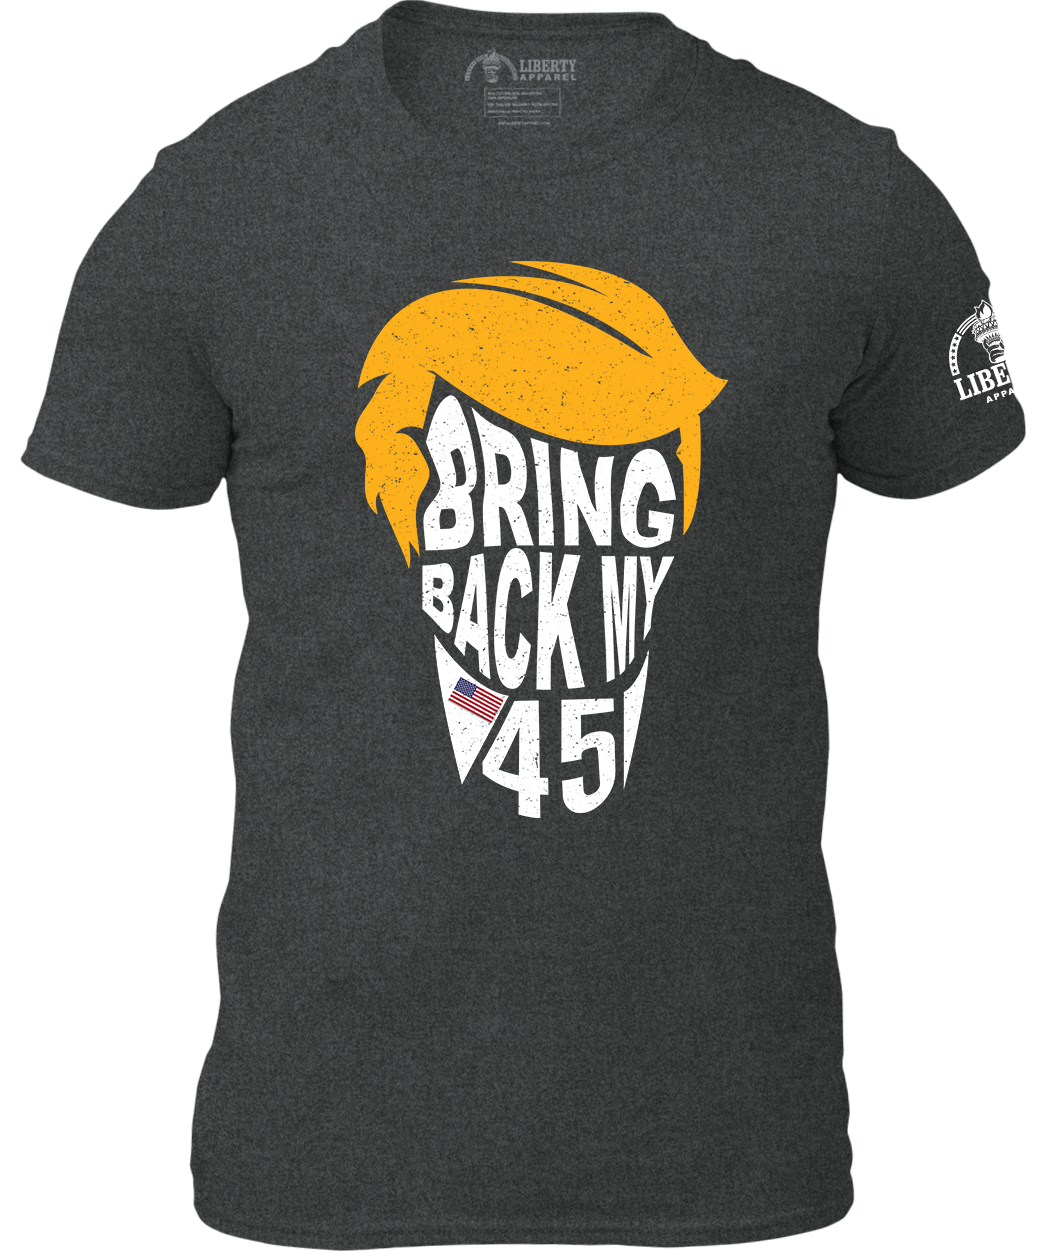 Bring Back My 45